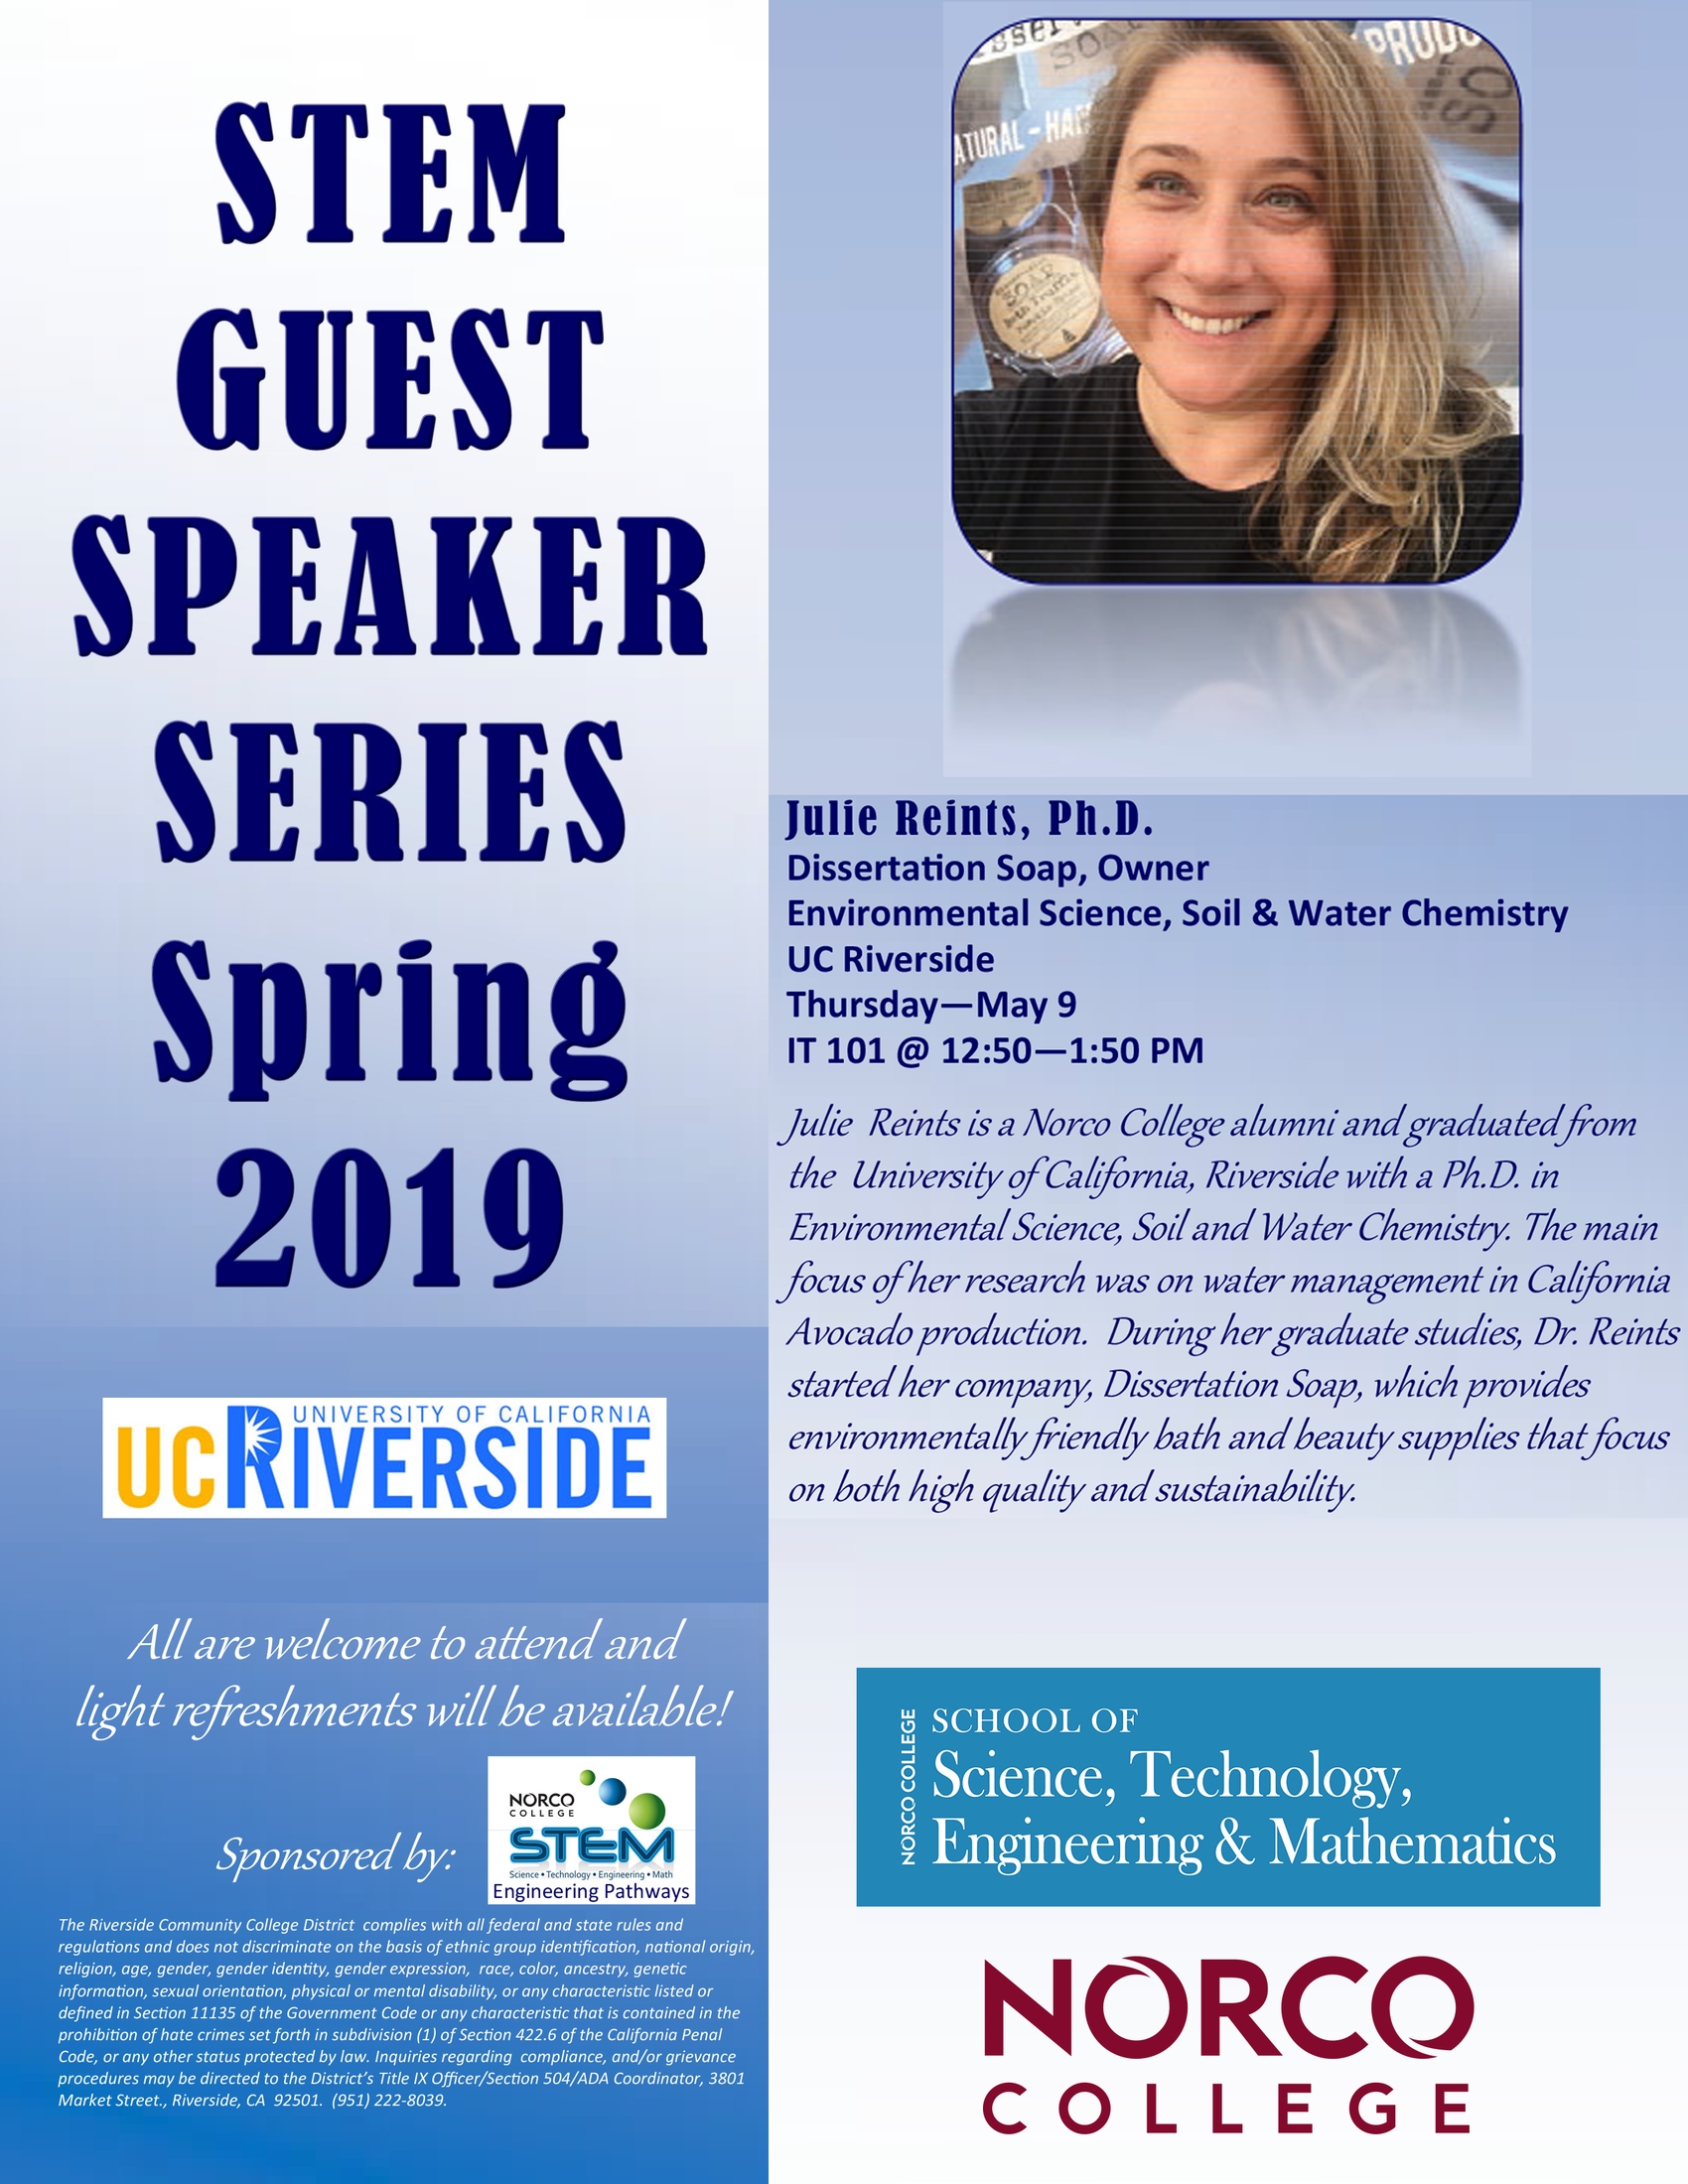 STEM Guest Speaker Series - Dr. Julie Reints